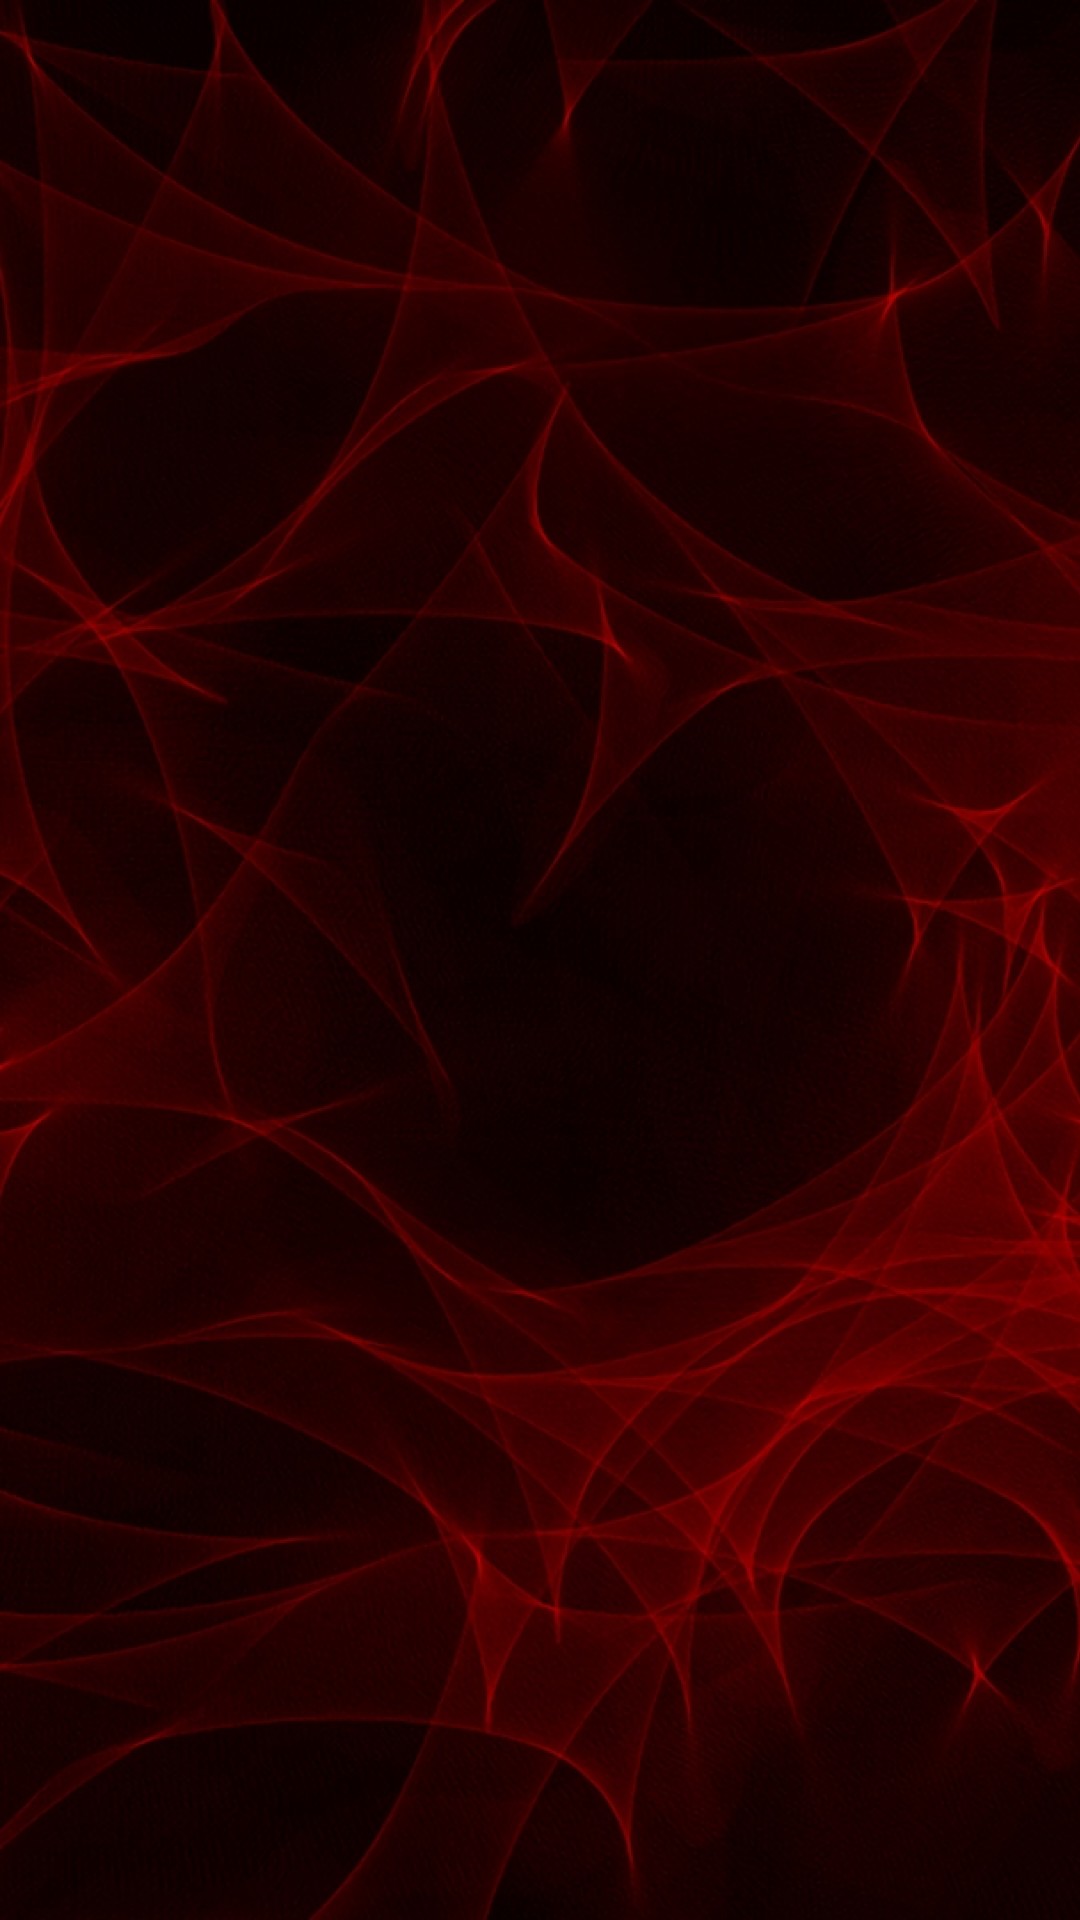 iphone 6sの壁紙,赤,黒,パターン,繊維,煙